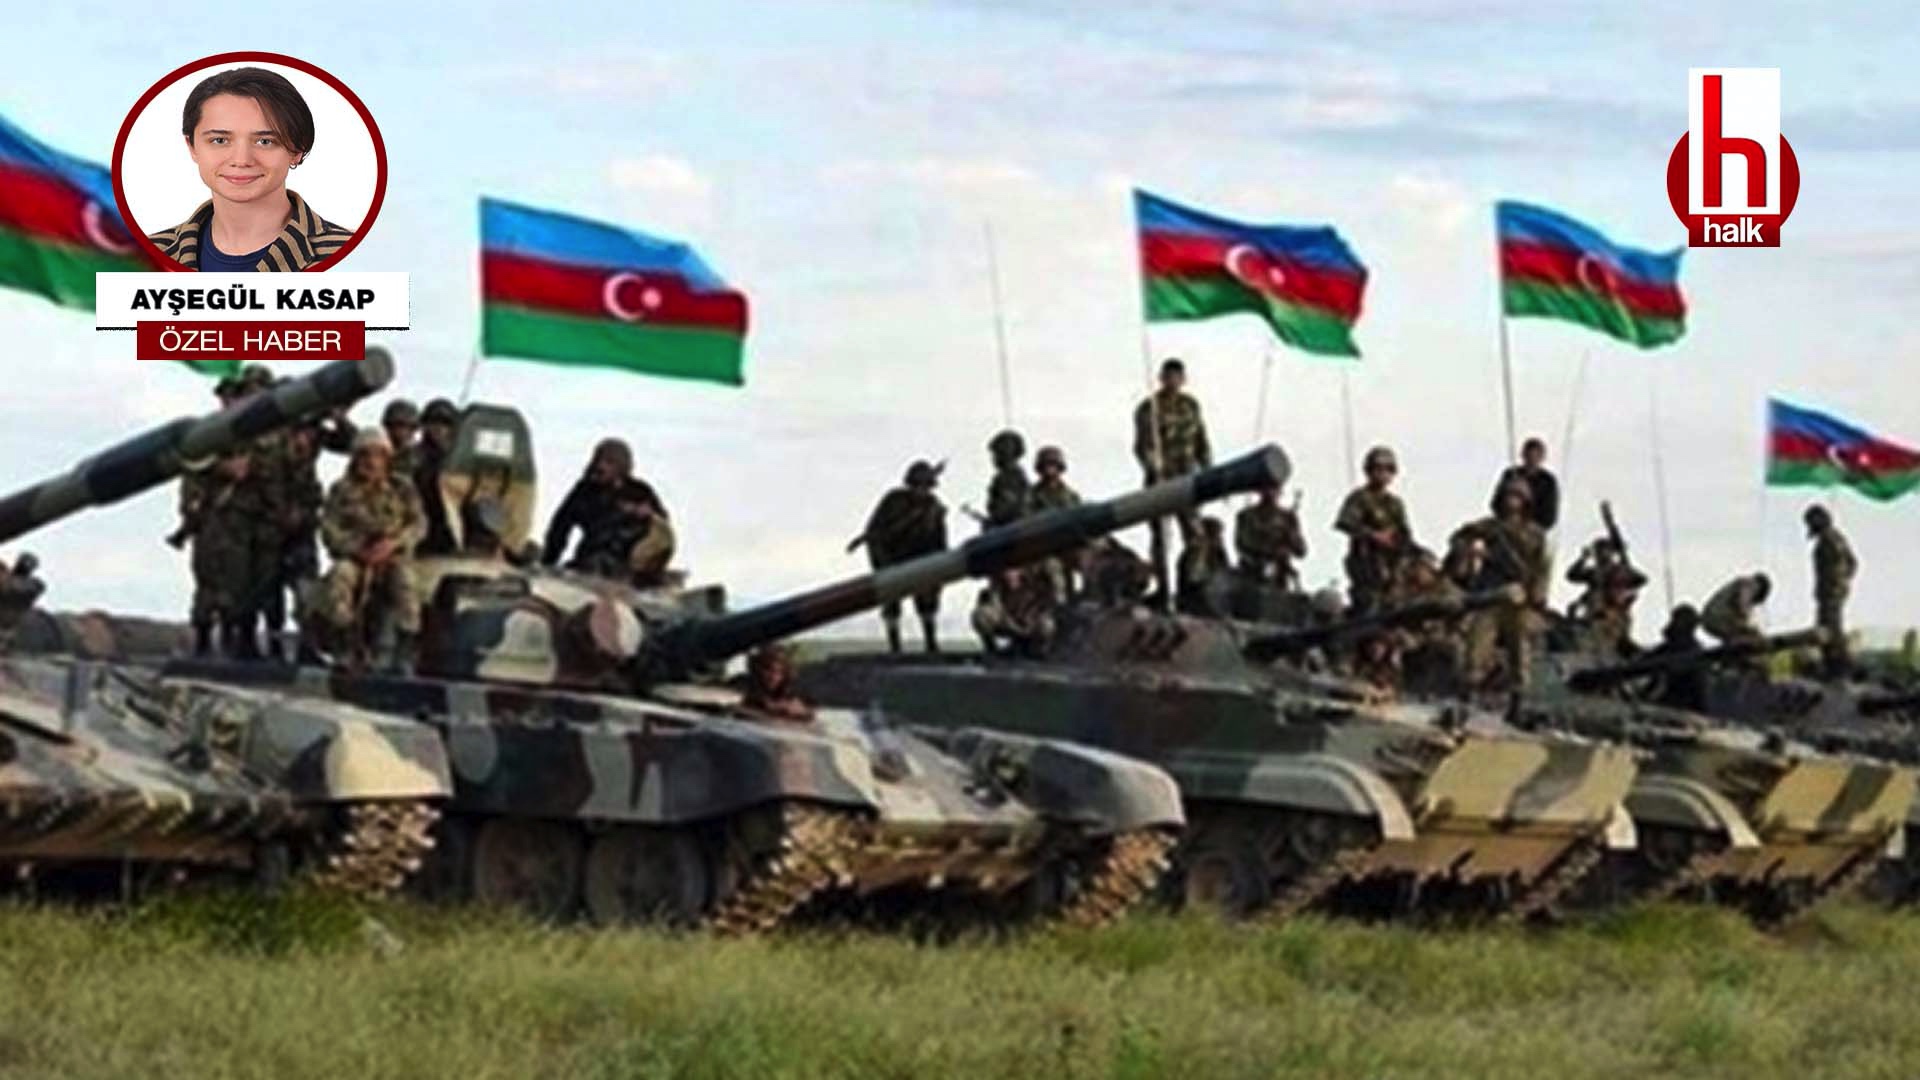 Aşirov: Azerbaycan halkı Rus askerlerinin gelmesini sıcak karşılamıyor